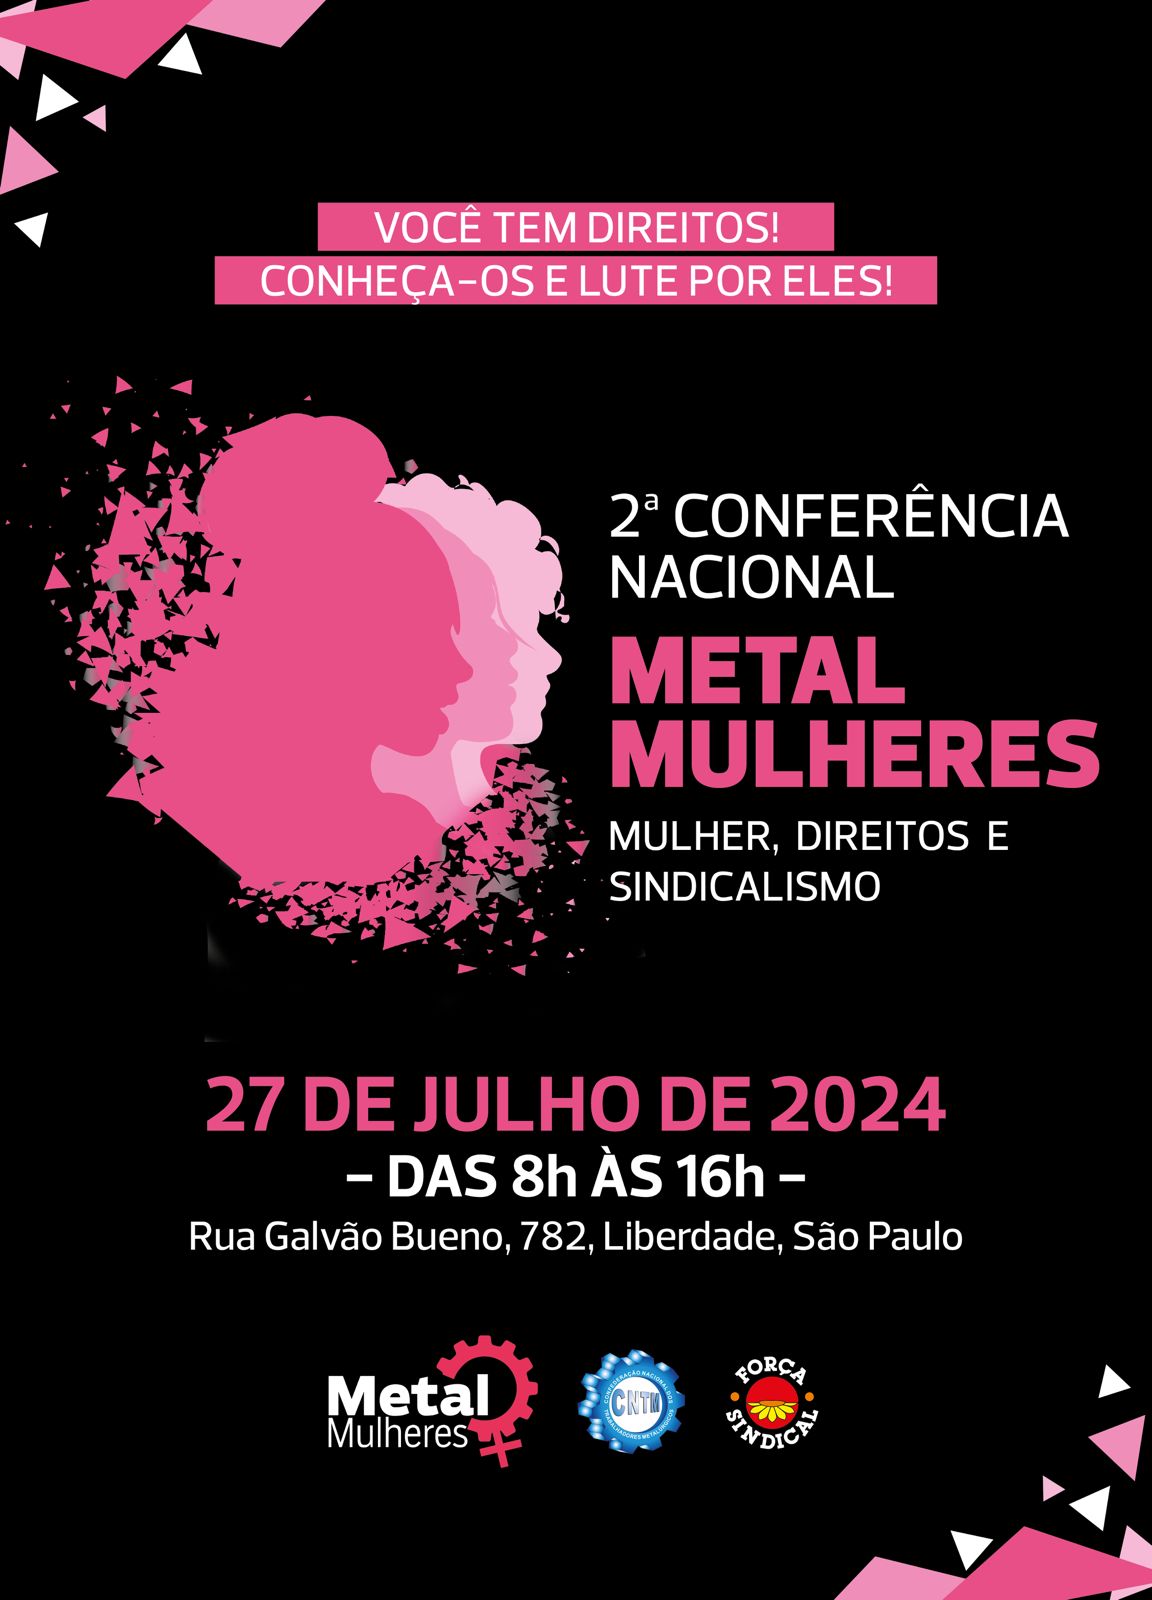 Metal Mulheres da CNTM será no dia 27 de julho